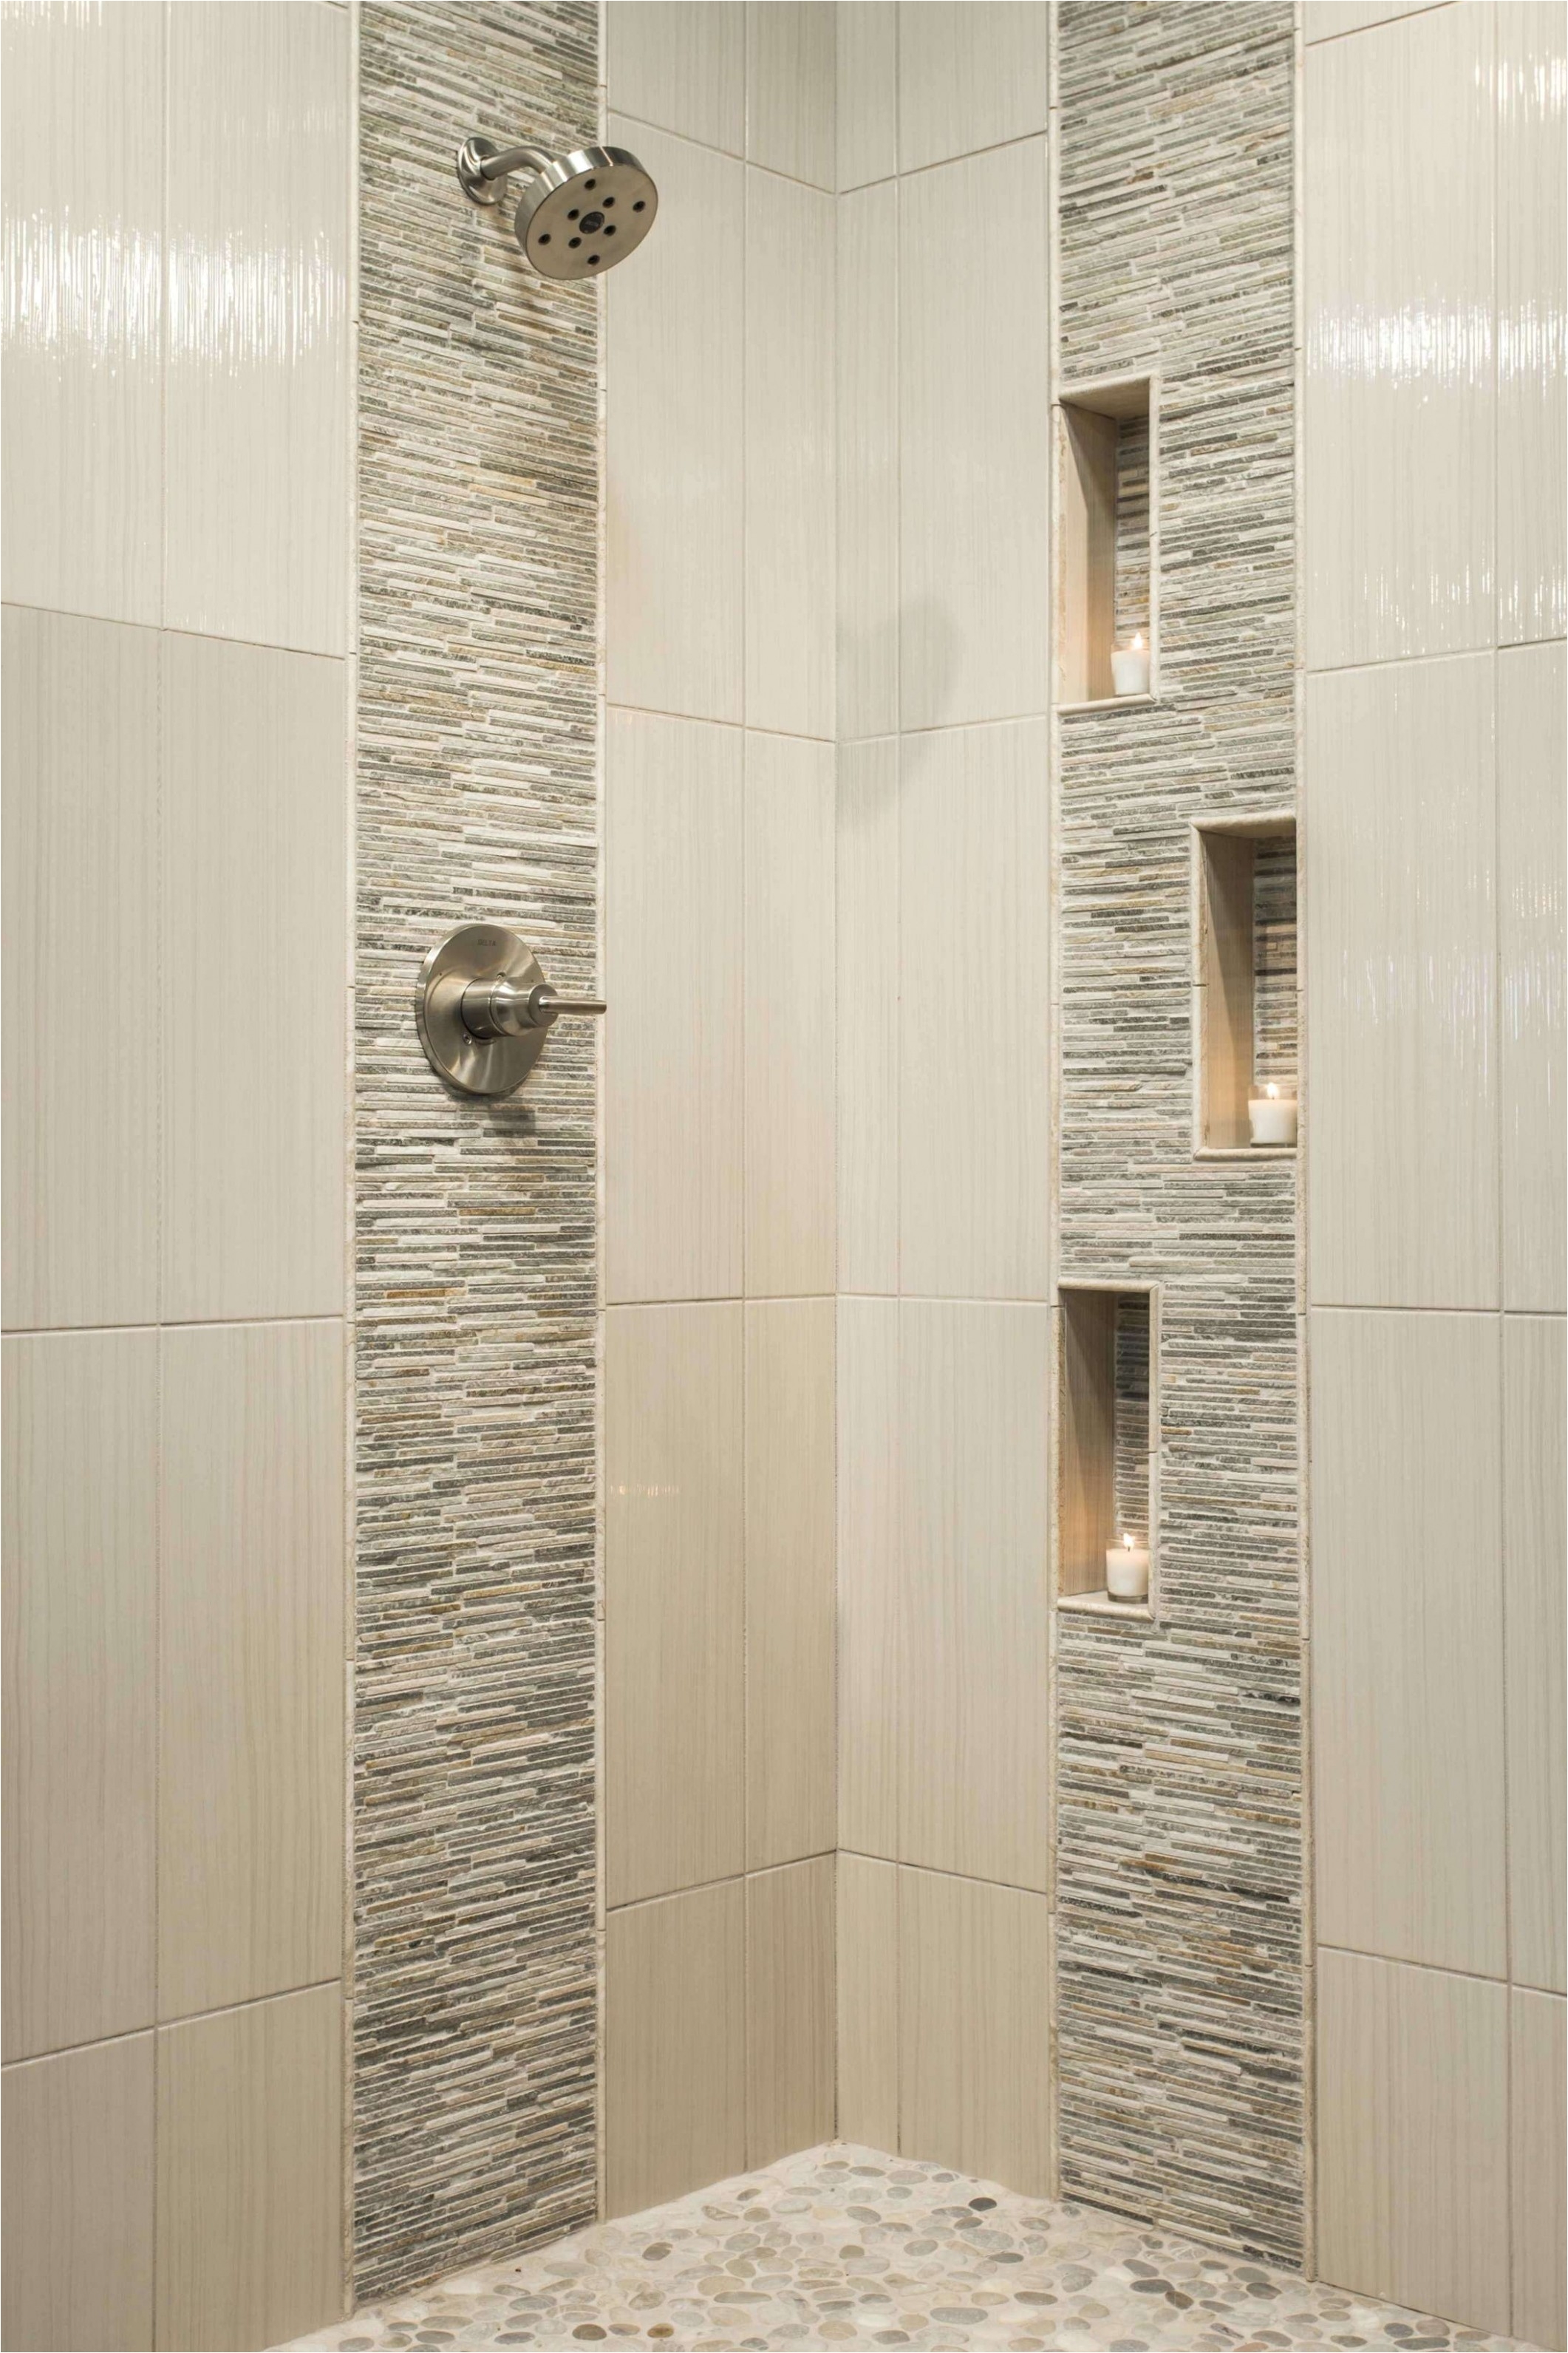 Bathroom Floor Tiles Design Valid Floor Tiles Mosaic Bathroom 0d New Bathroom Floor Tiles Home